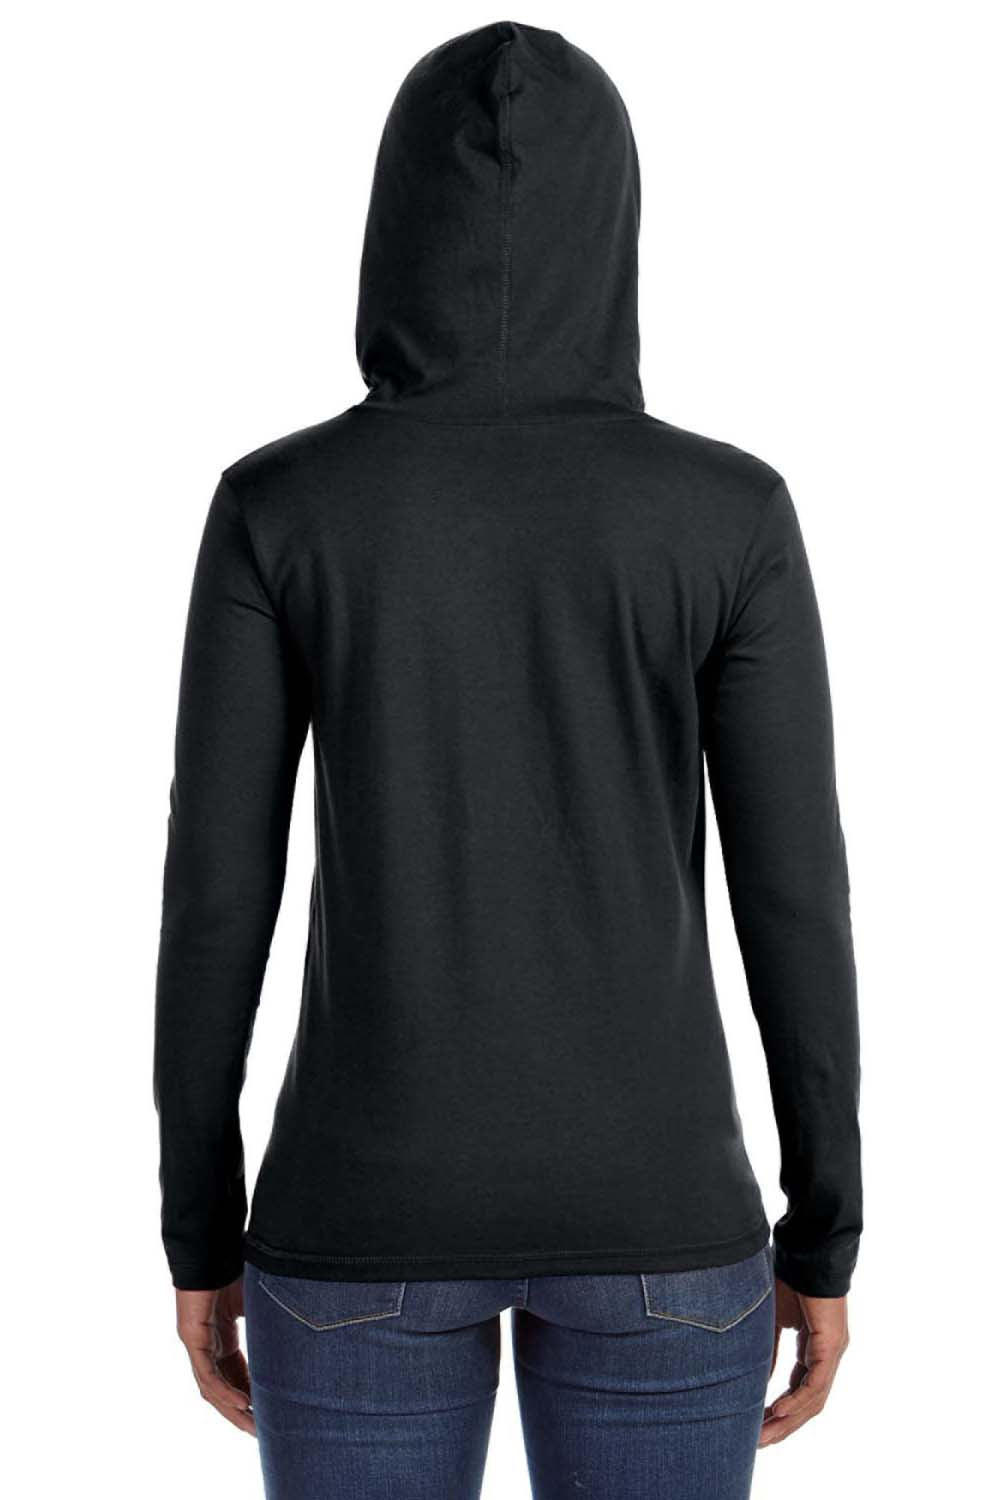 Anvil 887L Womens Long Sleeve Hooded T-Shirt Hoodie Black/Dark Grey Back